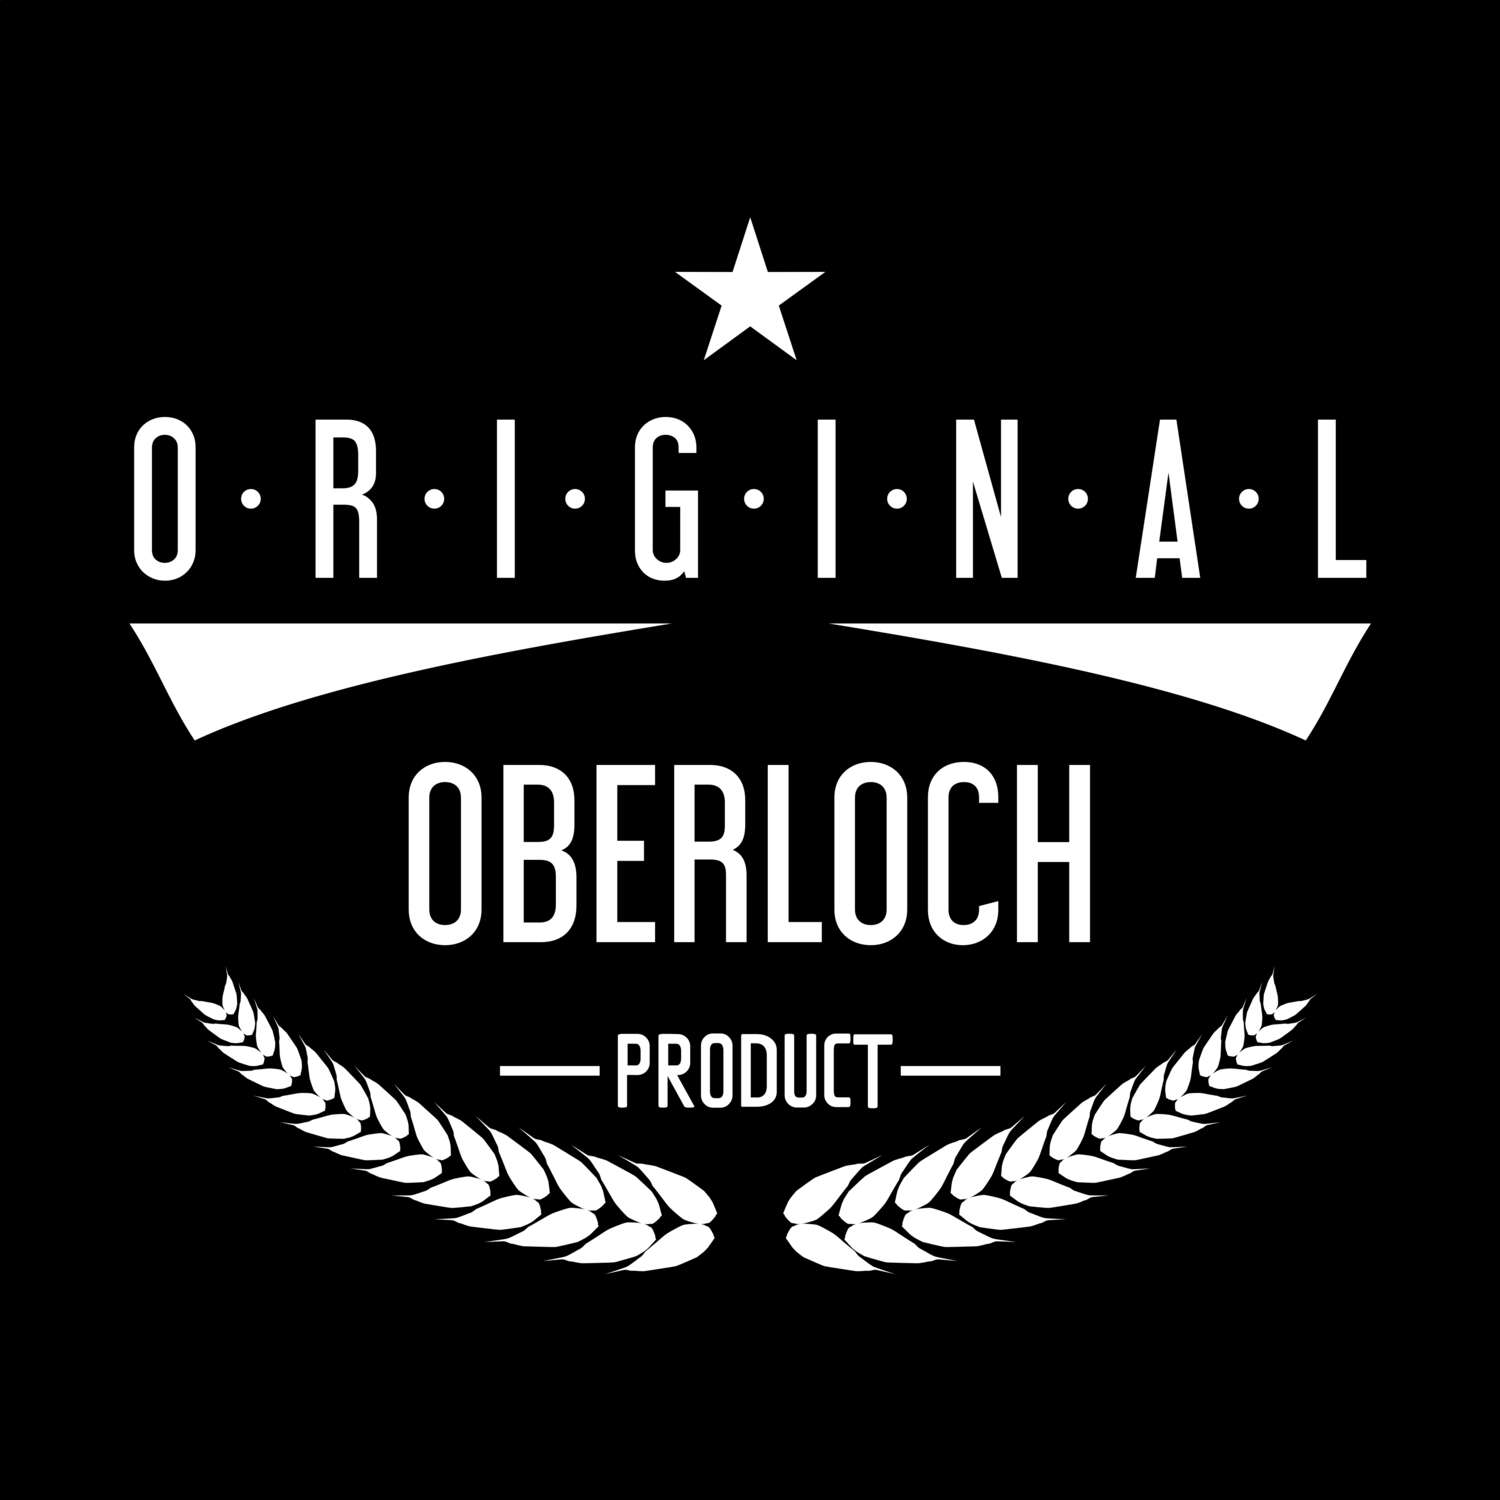 Oberloch T-Shirt »Original Product«